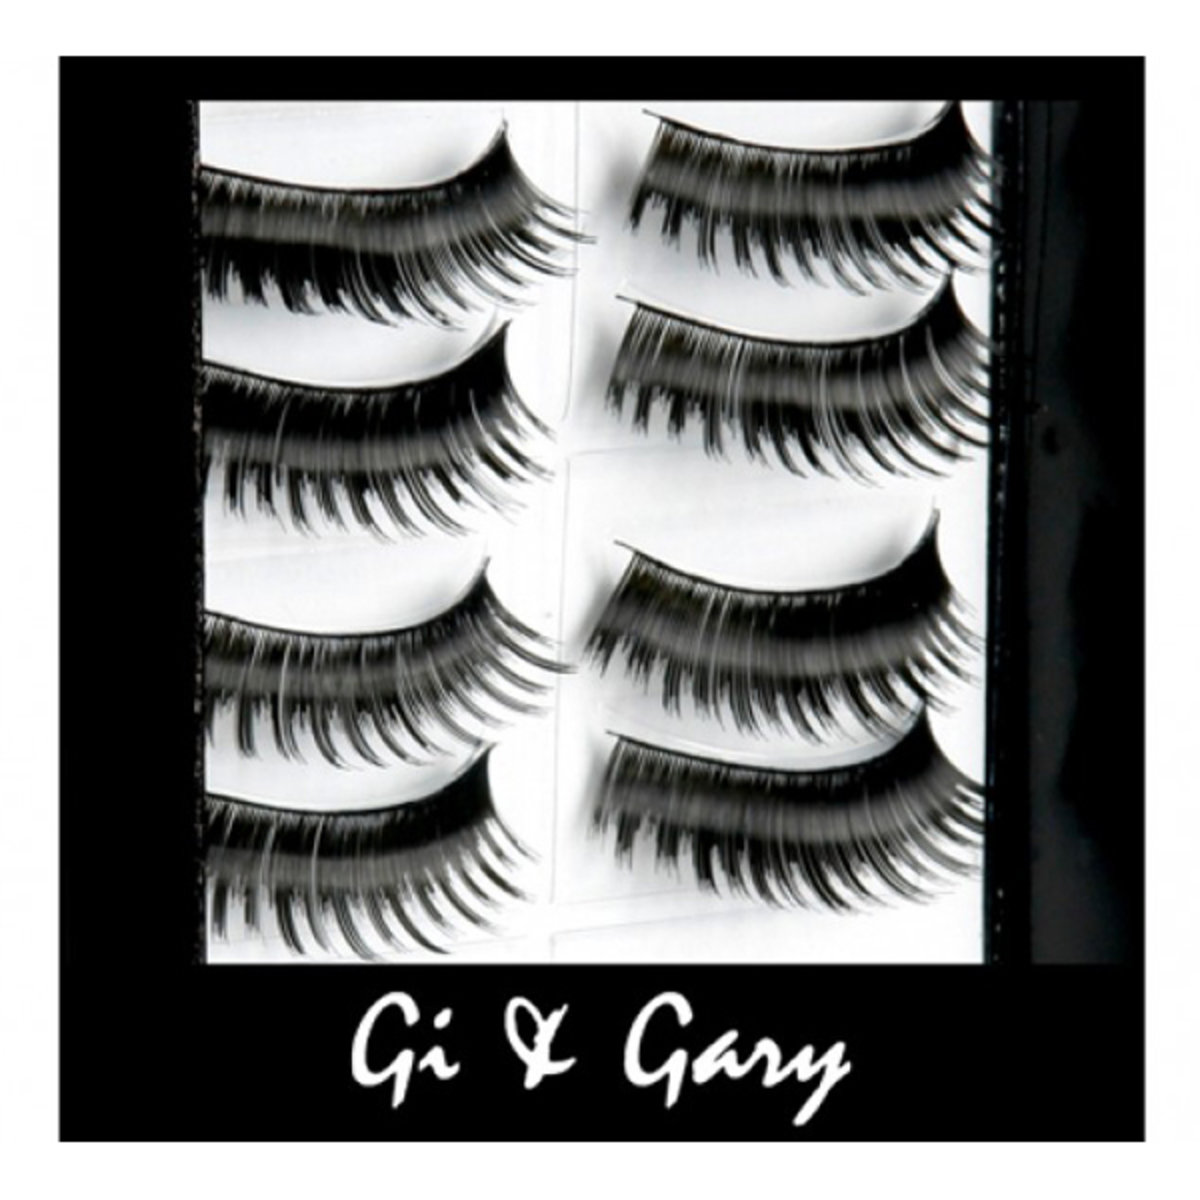 Professional Eyelashes(10 pairs) - Retro-Glam # L3 - (Authorised Goods)